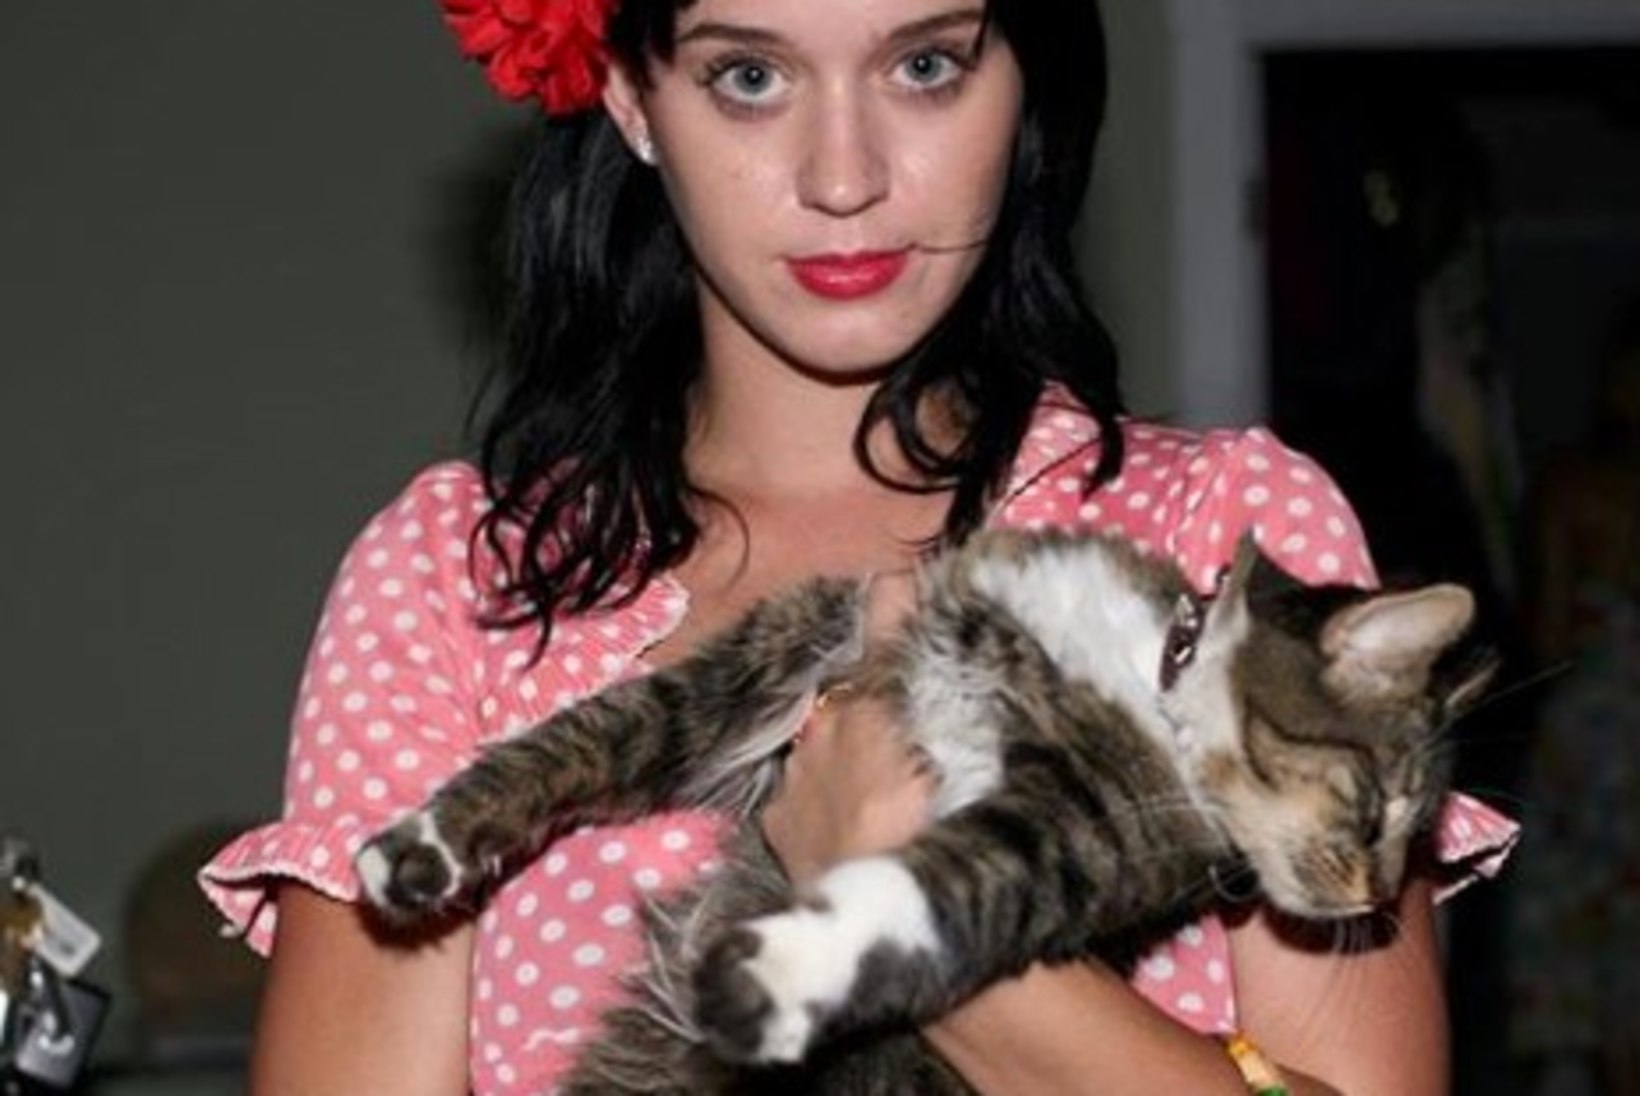 KURB UUDIS: Katy Perry teatas oma kassikese Kitty Purry surmast